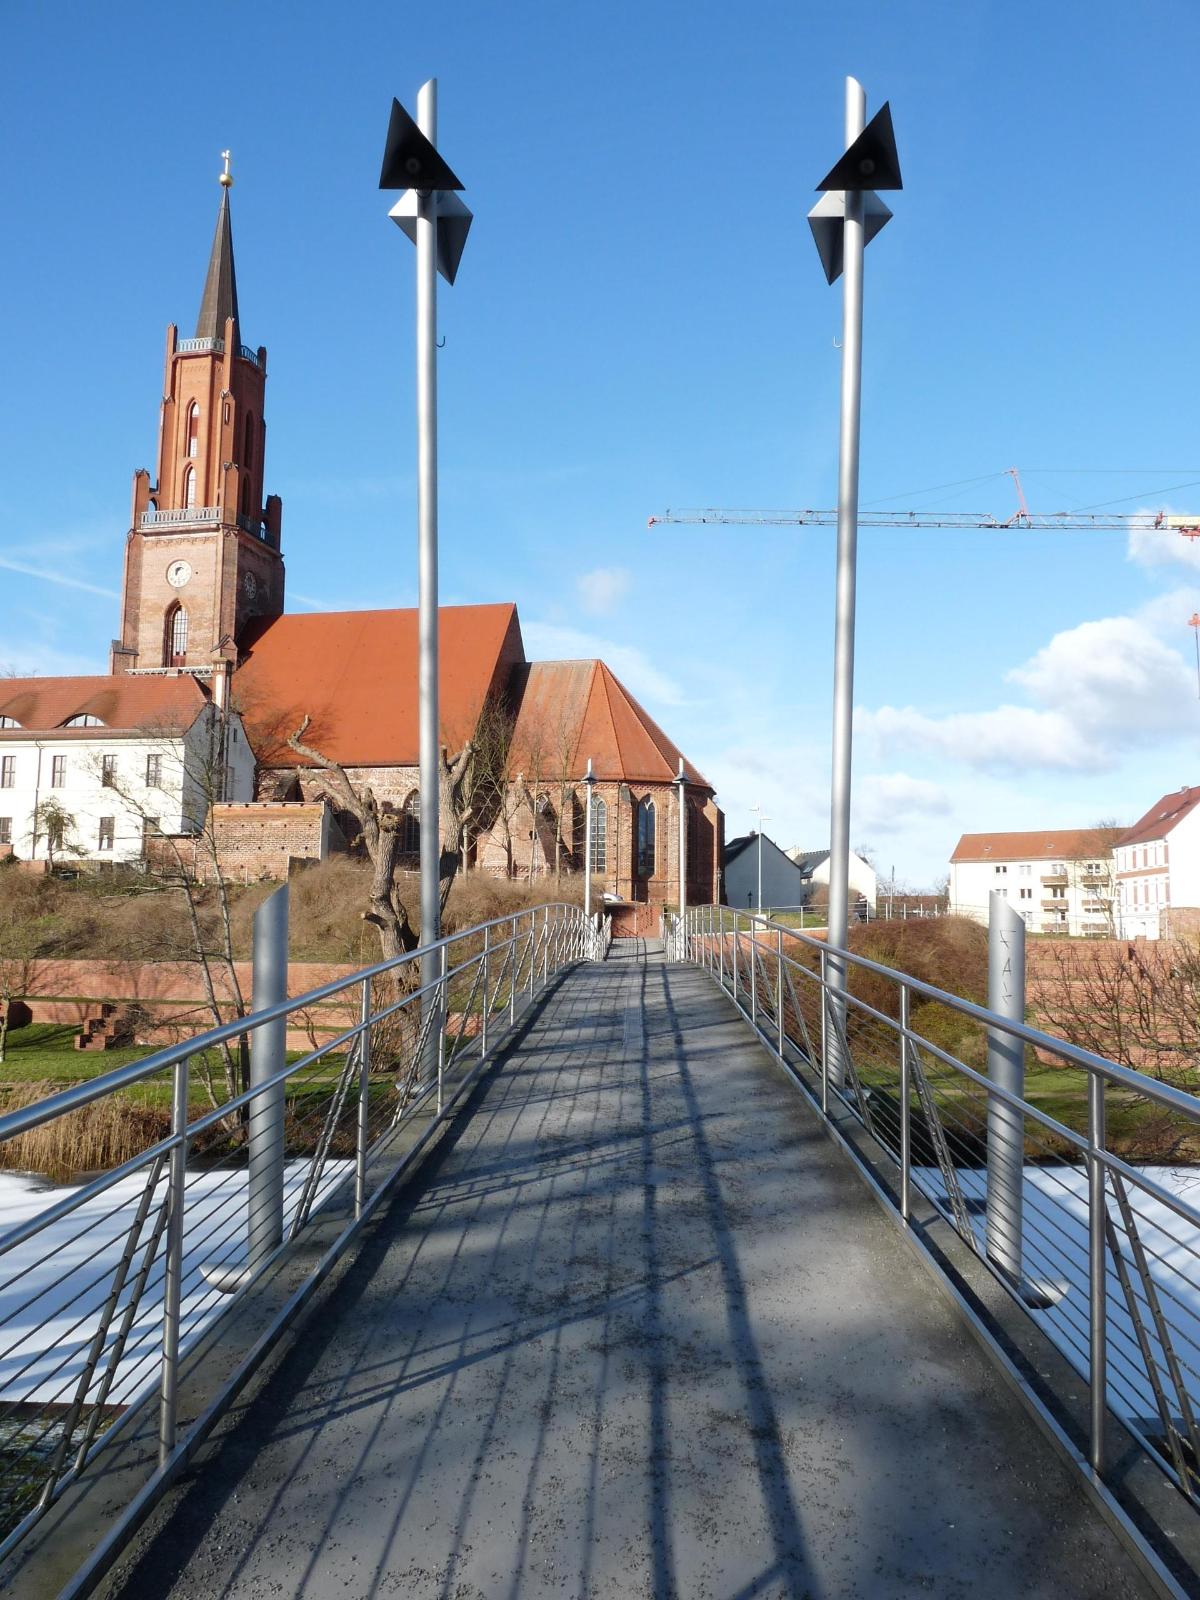 Fußgängerbrücke über den Schleusenkanal Die 2002 fertiggestellte Kirchbergbrücke führt über den ehemaligen Stadthafen, den ursprünglichen Stadtgraben, heute Schleusenkanal, zum Kirchberg mit den Resten des alten Stadtkerns. Die Kirchbergbrücke ist eine Balkenbrücke aus Stahl und als Fuß-und Radwegbrücke gebaut.